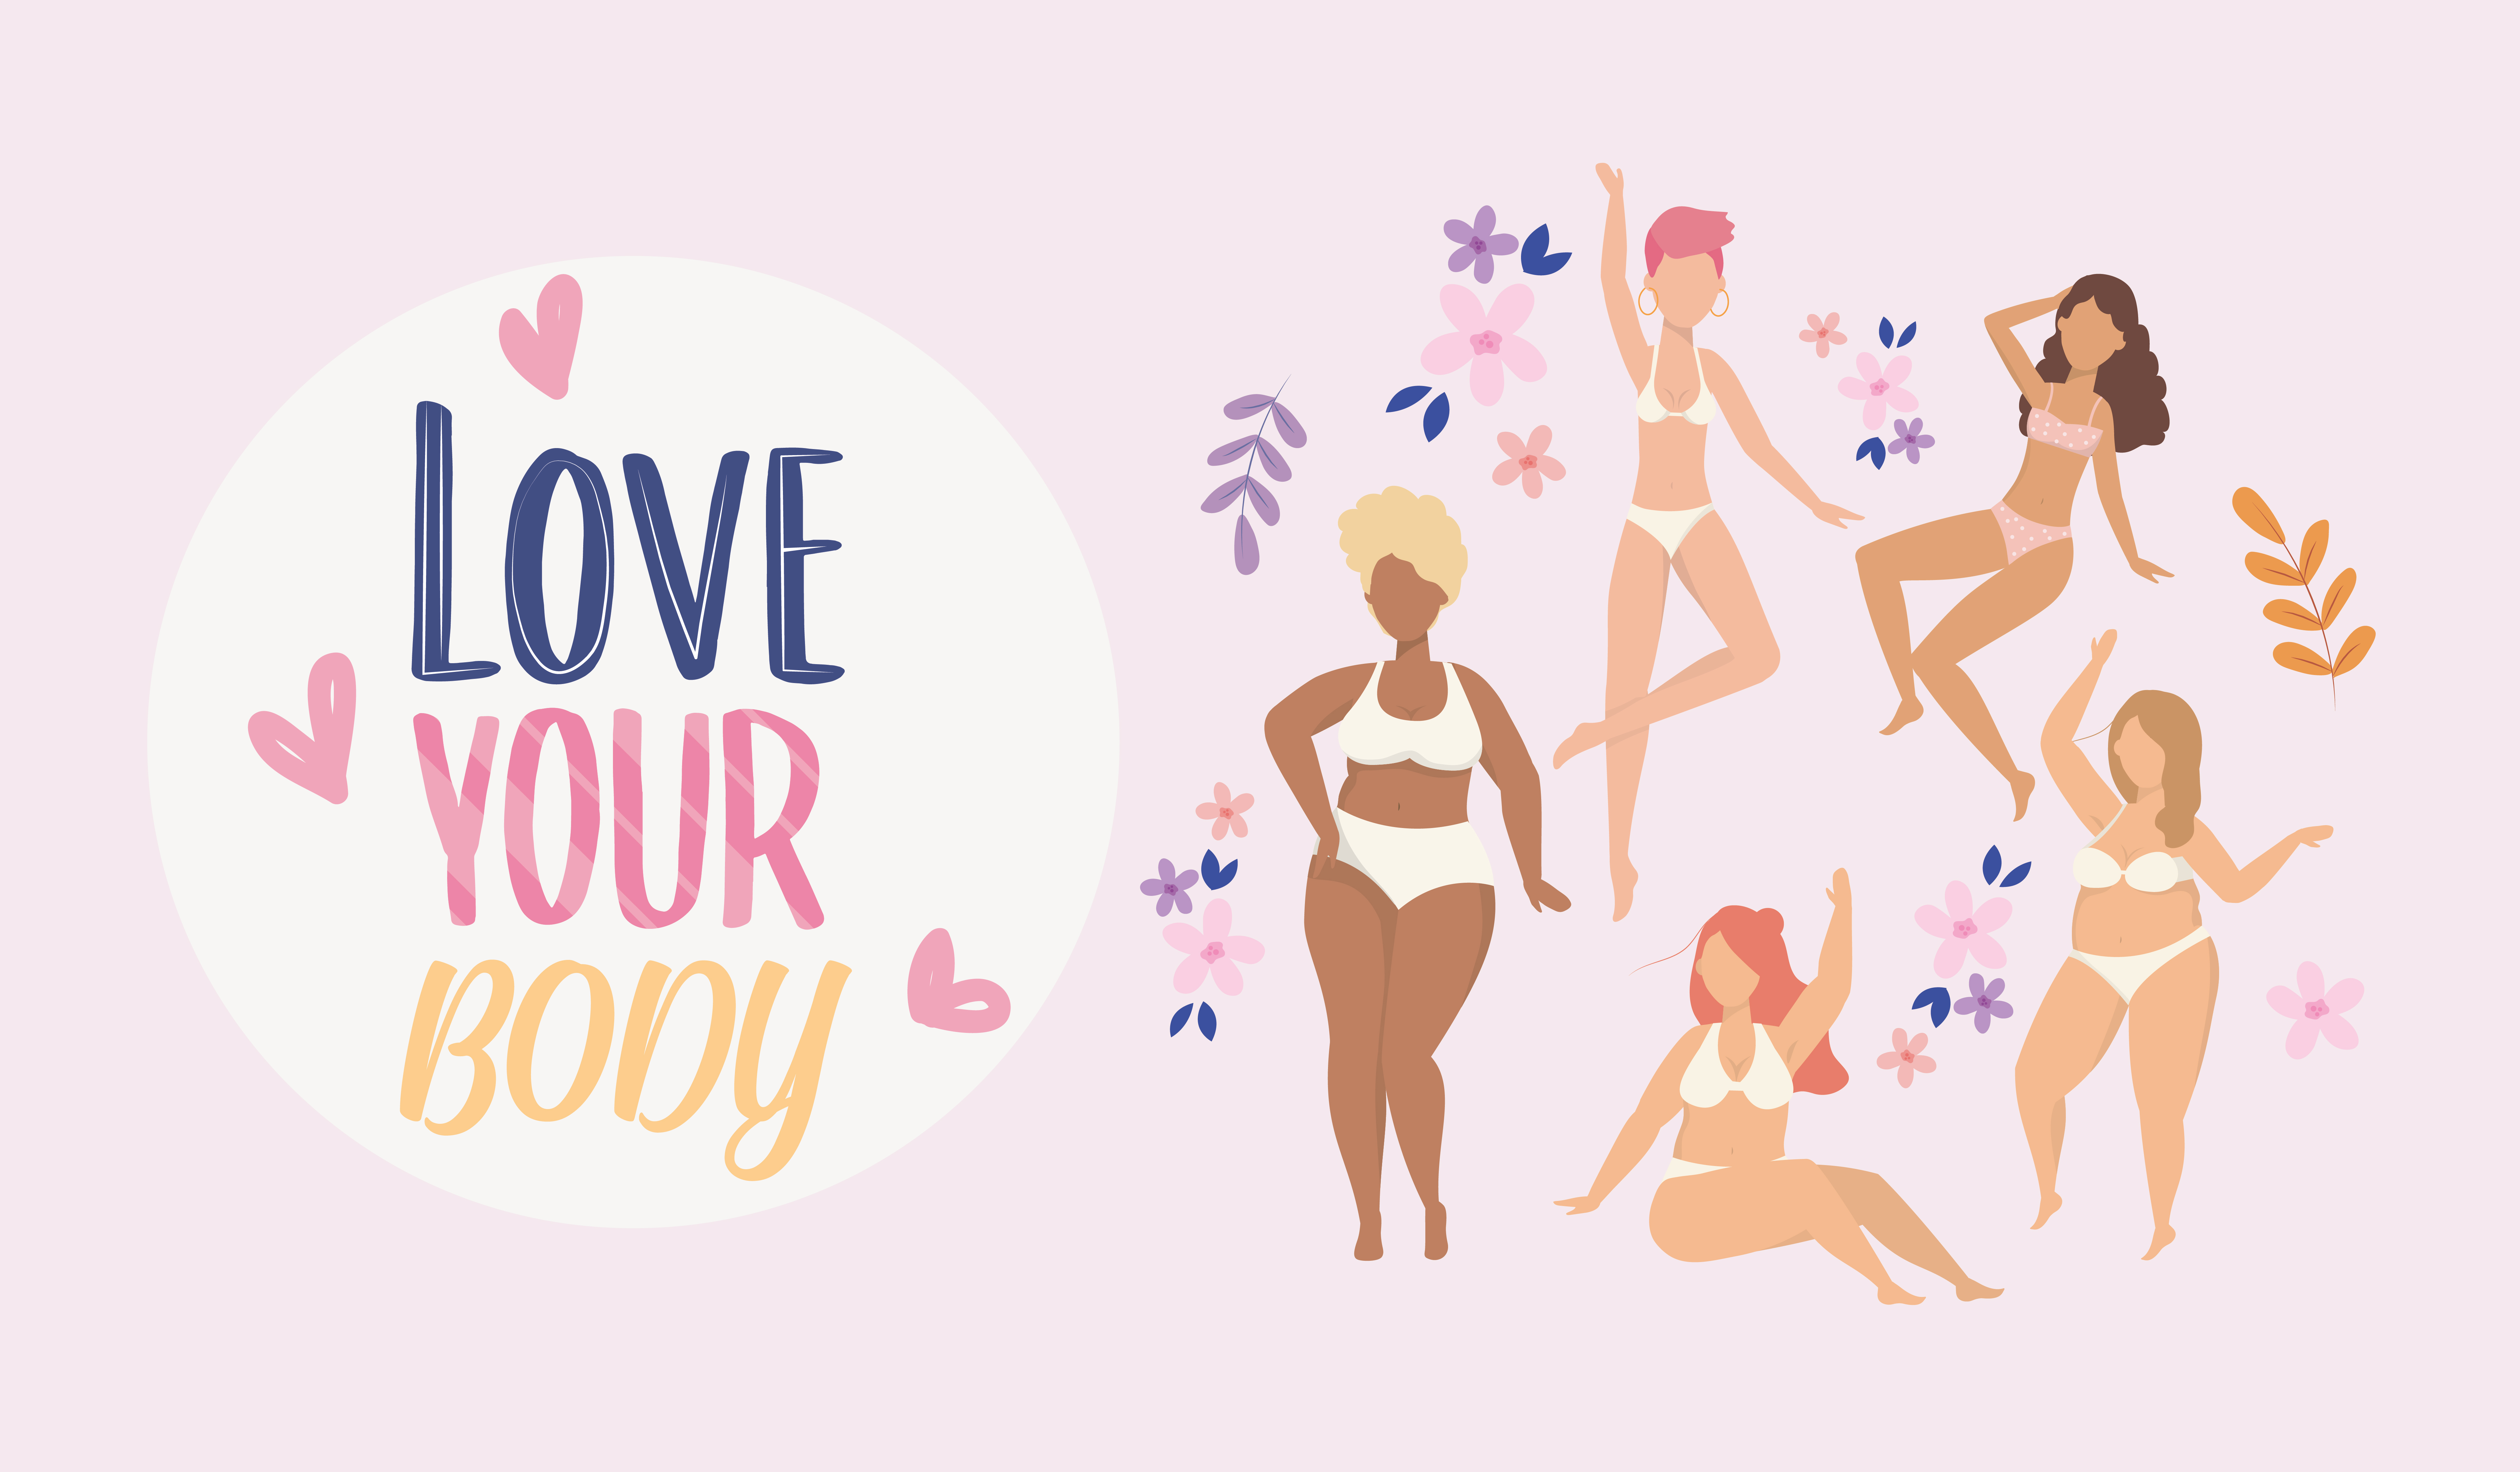 Text: Eine Bildzeichnung mit fünf Figuren von Frauen in Unterwäsche. Fliederfarben der Hintergrund. Schriftzug: Love your body. 